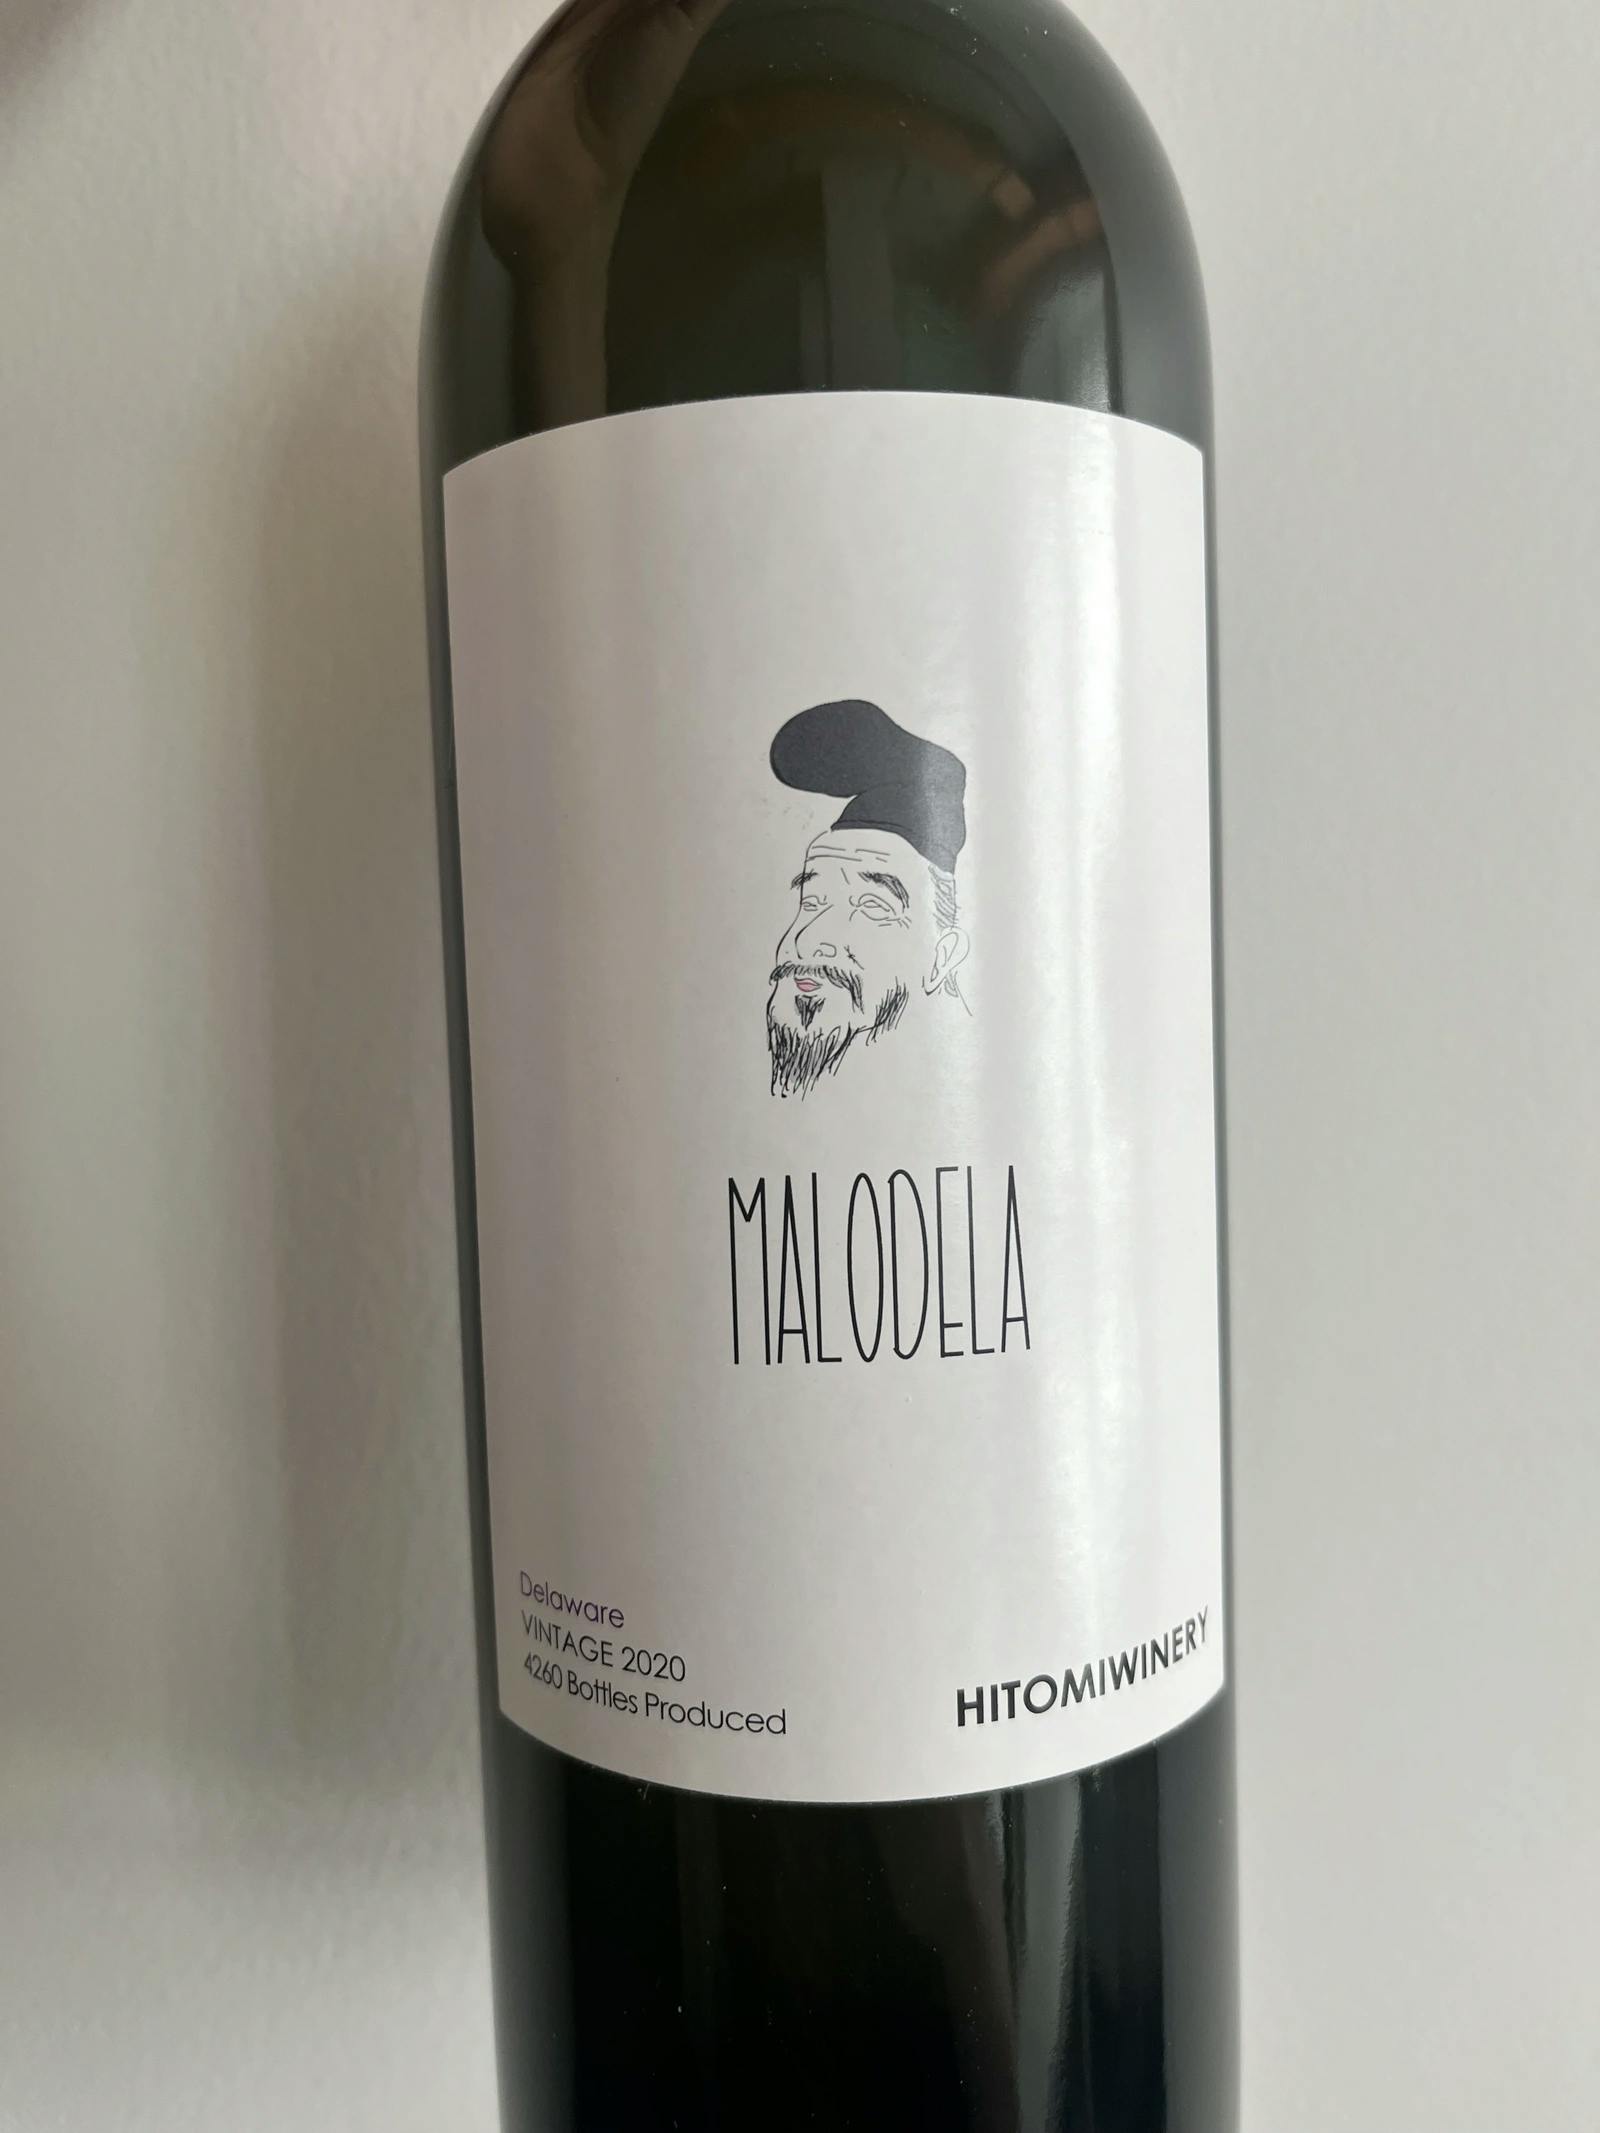 Hitomi Winery Malodela 2020